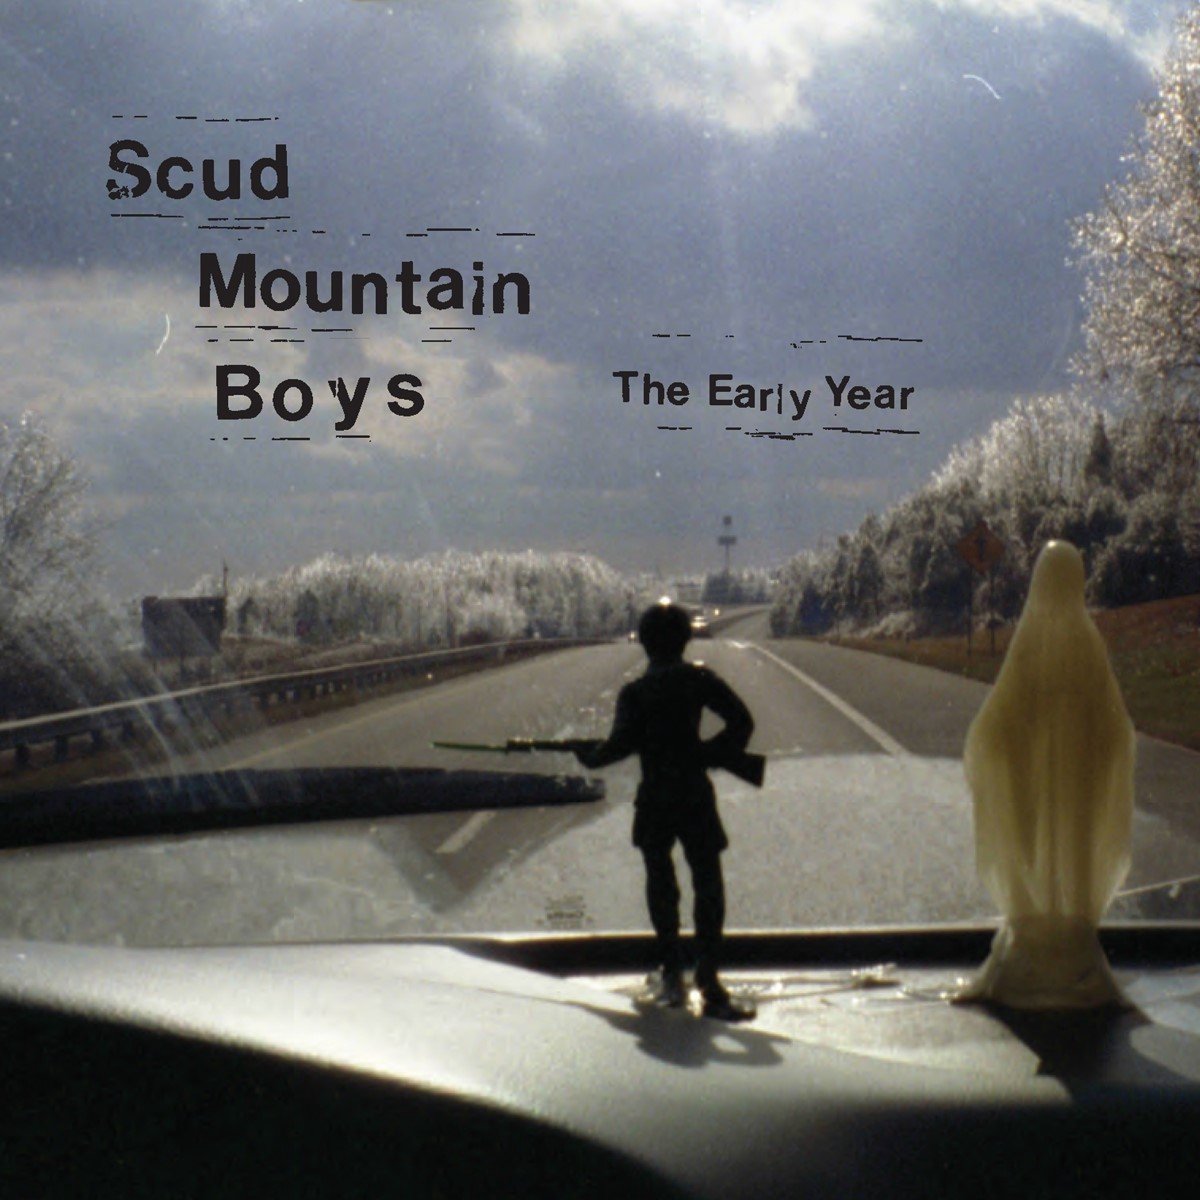 Scud Mountain Boys - The Early Year (2 CD) - Scud Mountain Boys